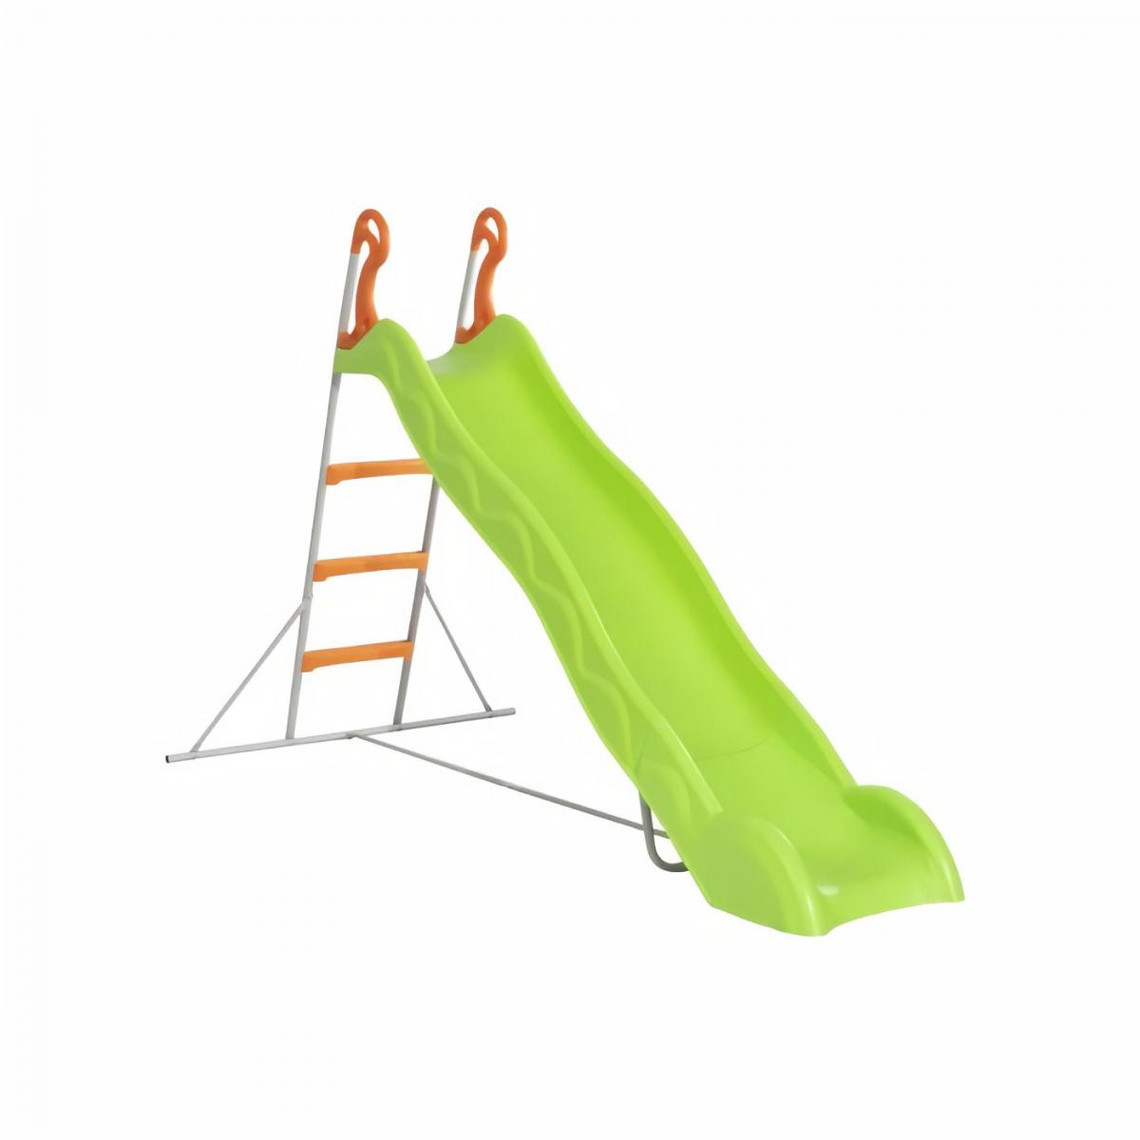 Trigano Toboggan LINOU de 2,63m de glisse , coloris vert avec 3 echelons anti-dérapants coloris orange, structure métal coloris